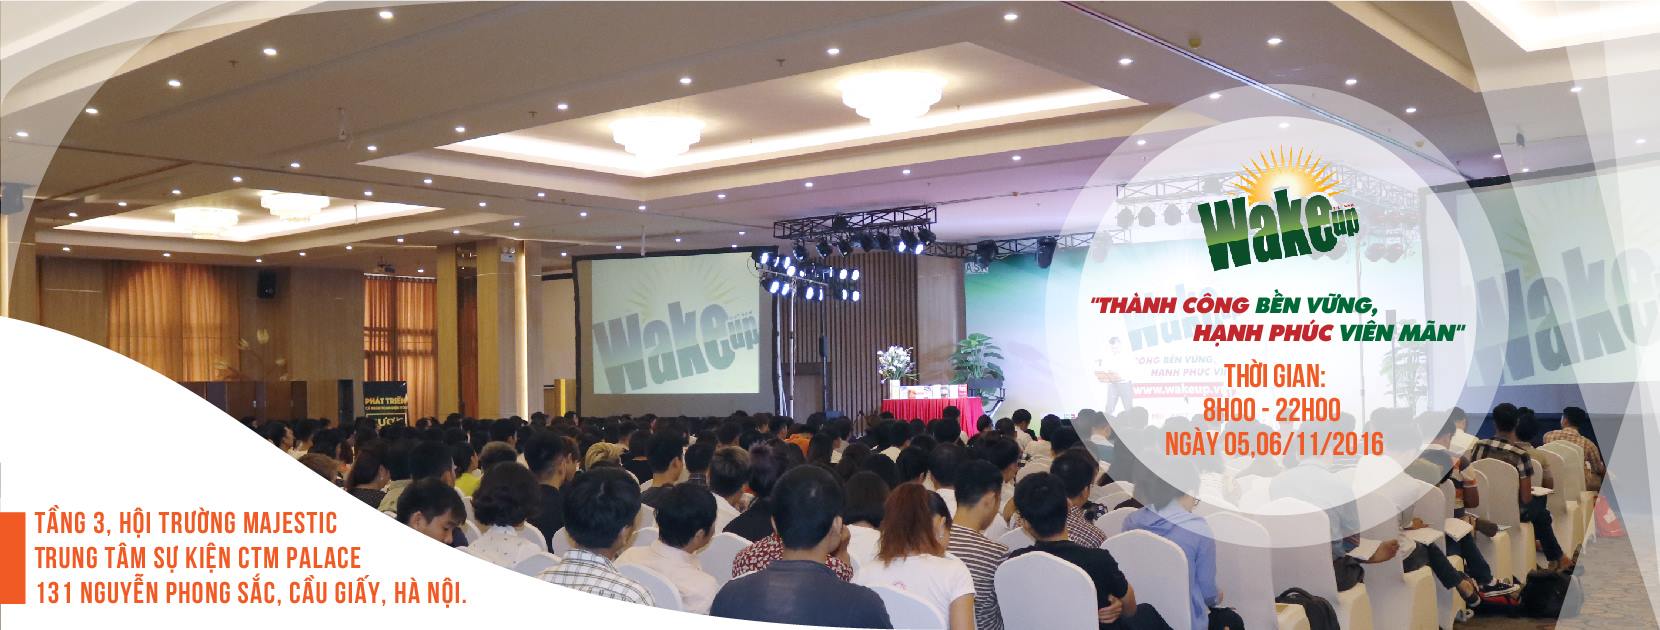 Thông báo địa điểm tổ chức khóa học WAKE UP 19 tại Hà Nội